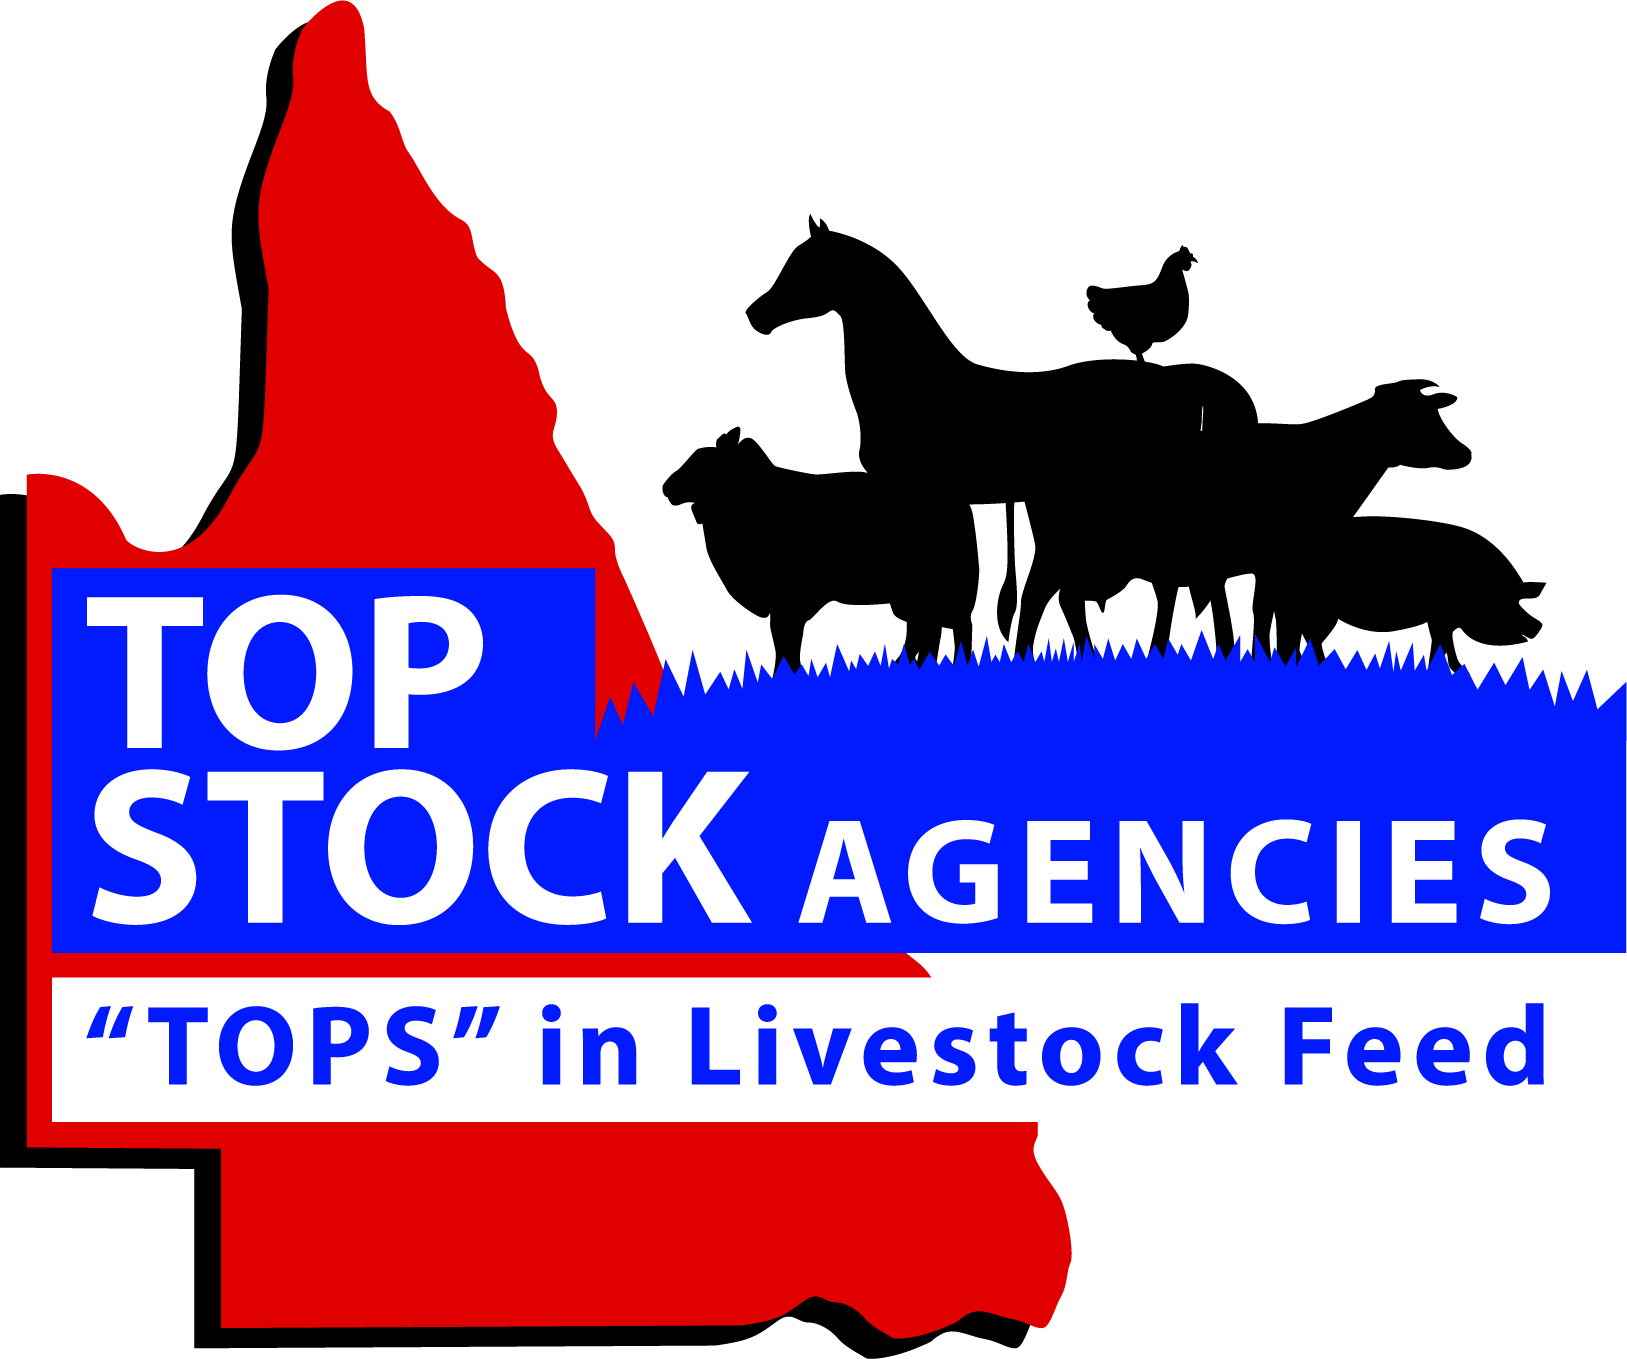 Top Stock Agencies